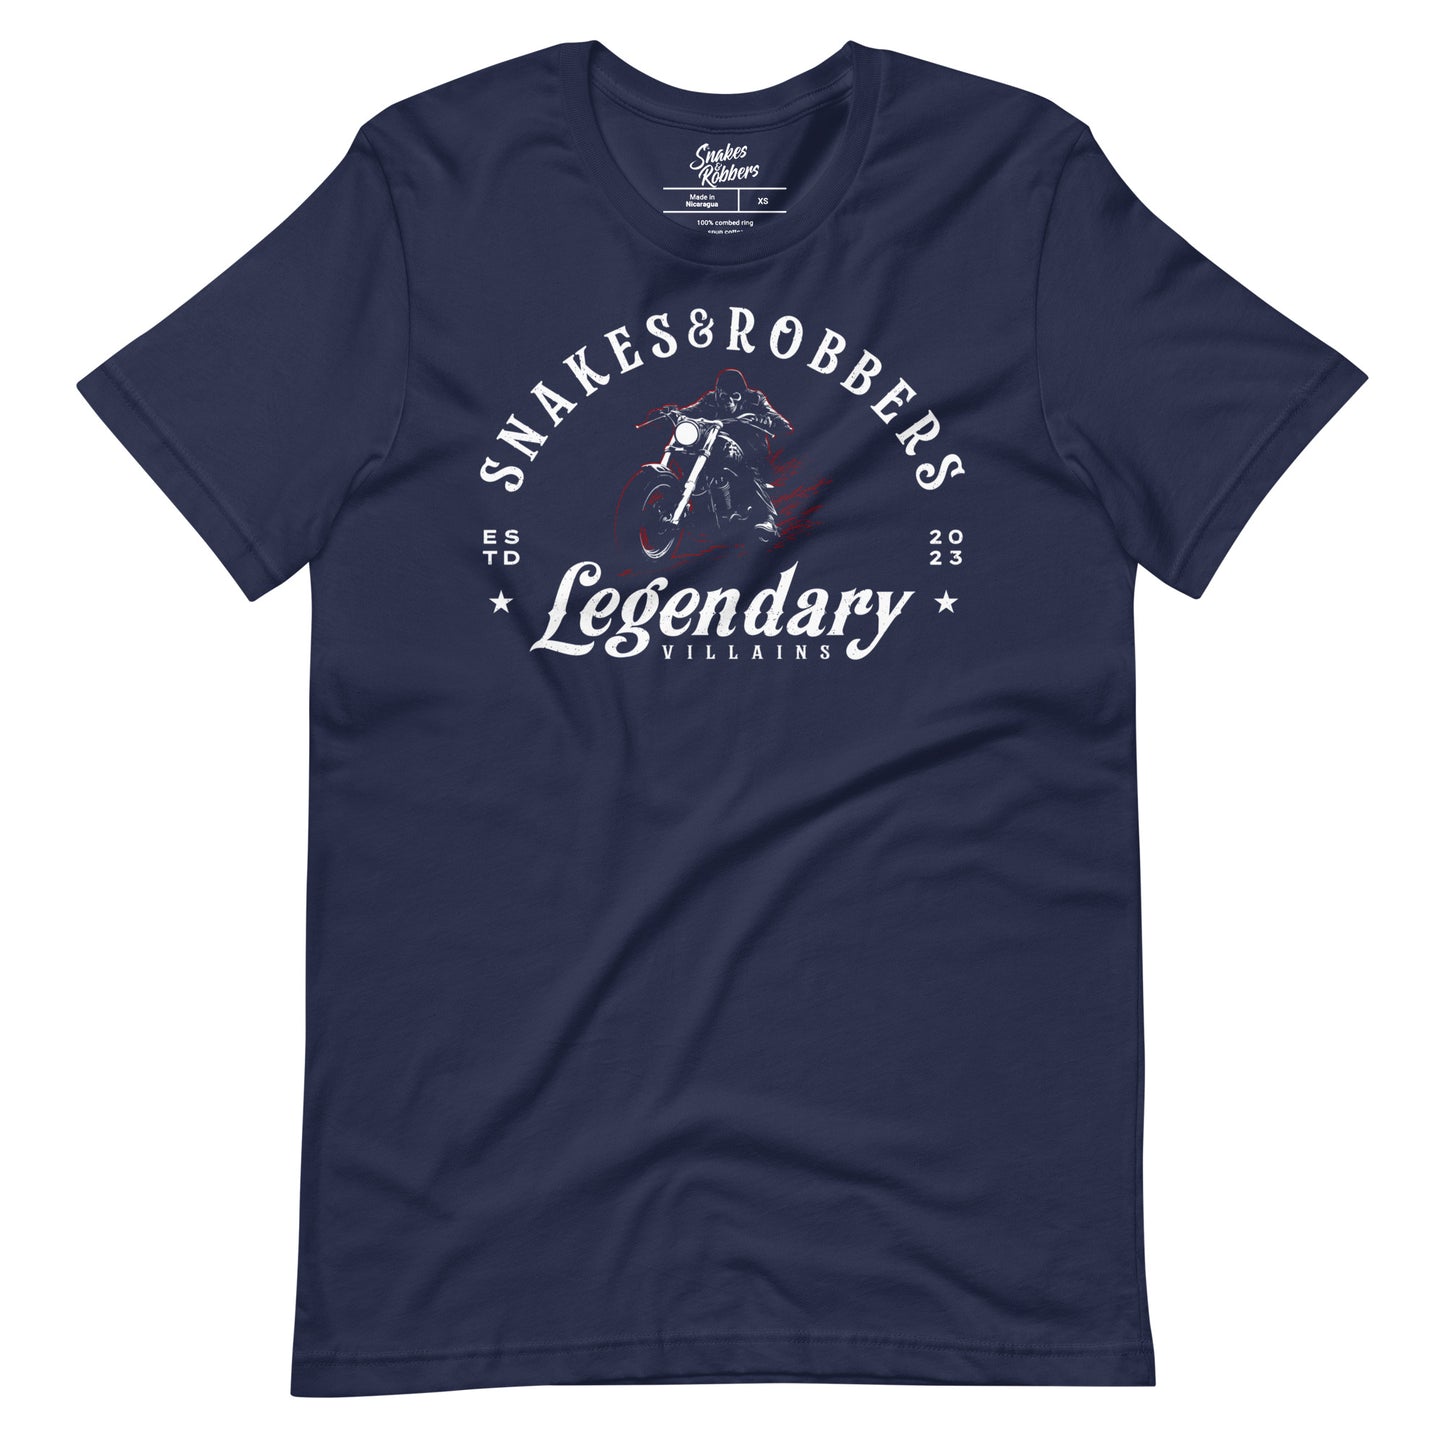 Legendary Villains Unisex Retail Fit T-shirt